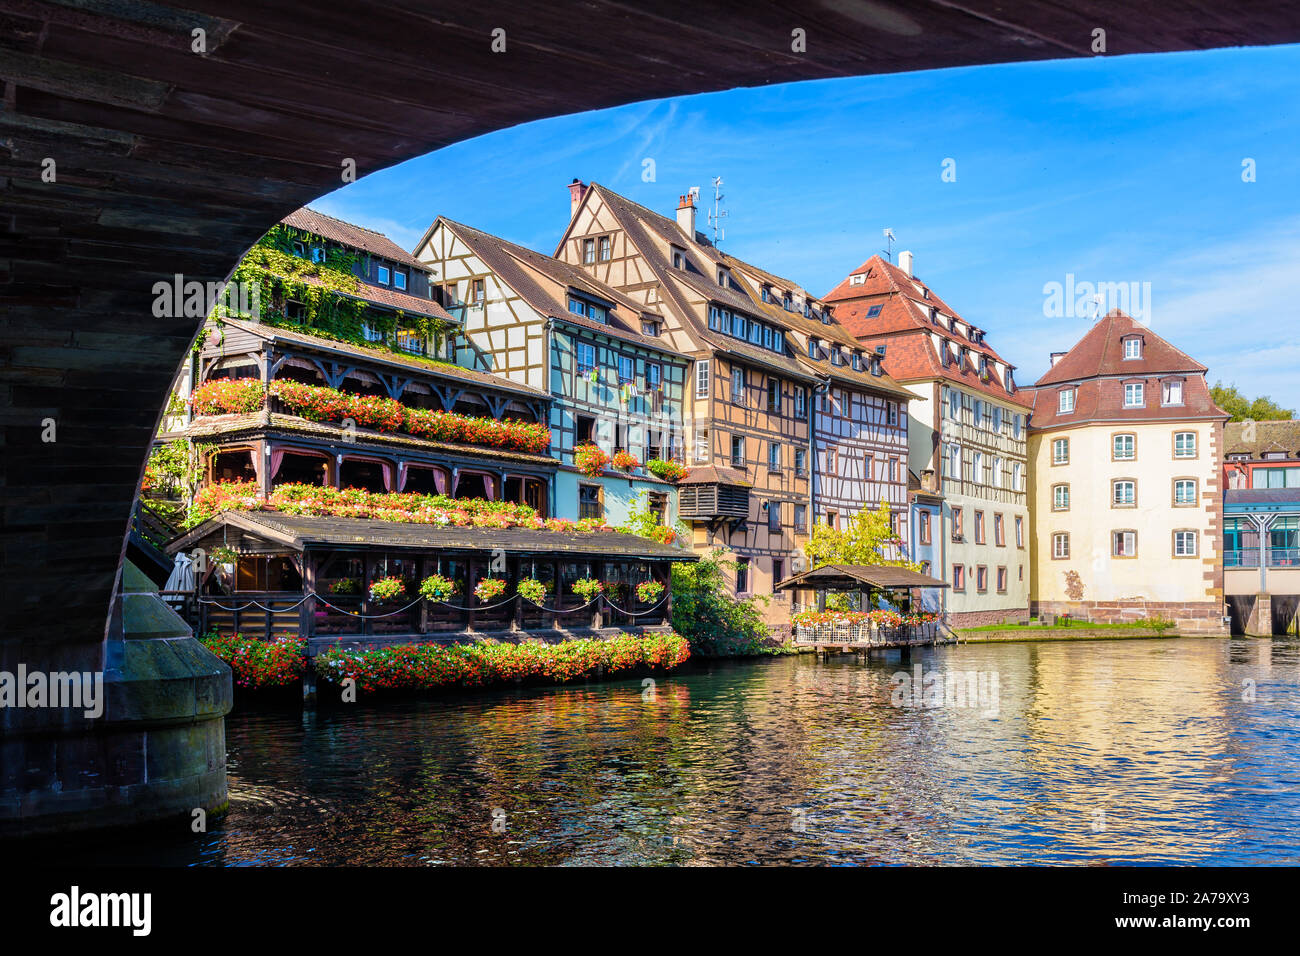 Construcciones típicas lomañolas recubre el río Ill en el barrio Petite France en Estrasburgo, Francia, visto desde debajo del puente de Saint-Martin. Foto de stock